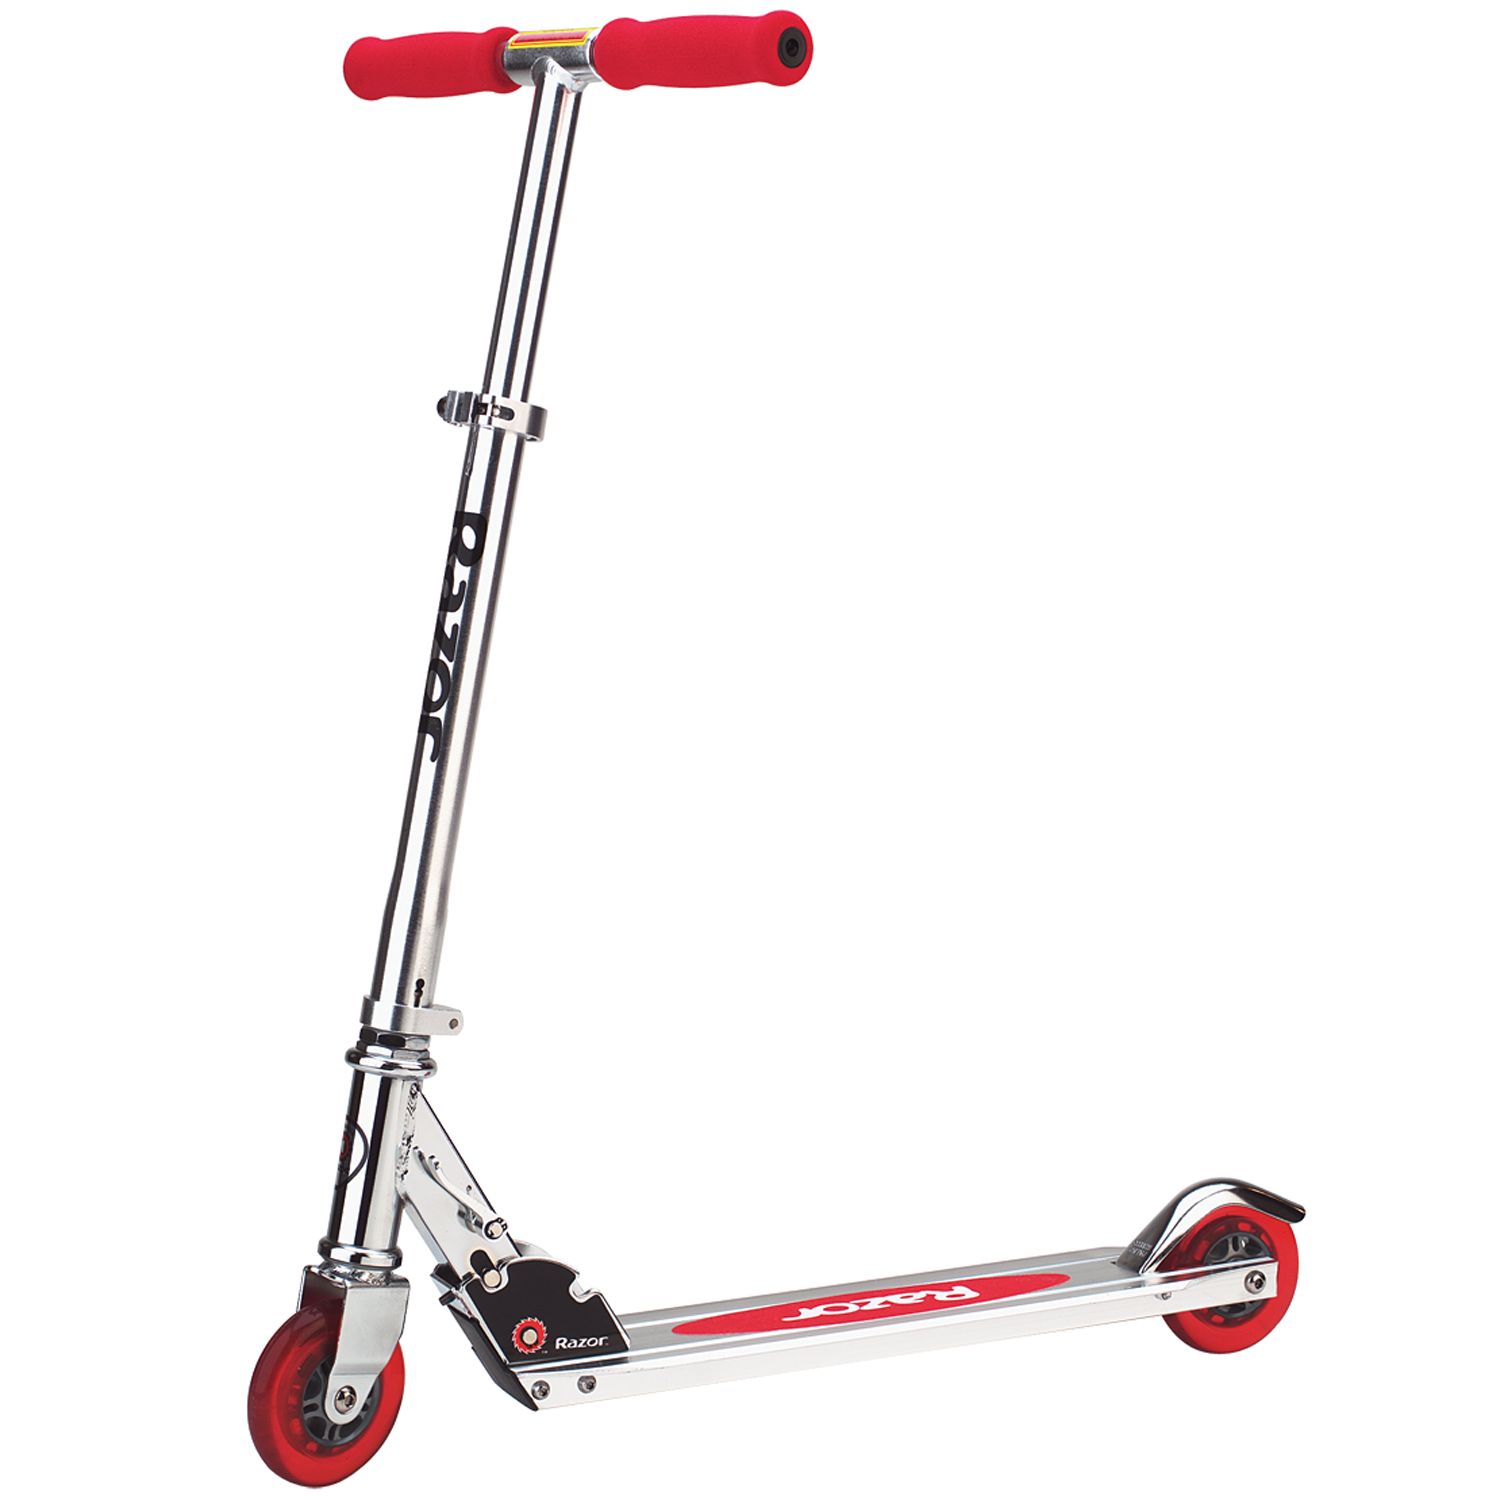 razor scooter 3 wheels